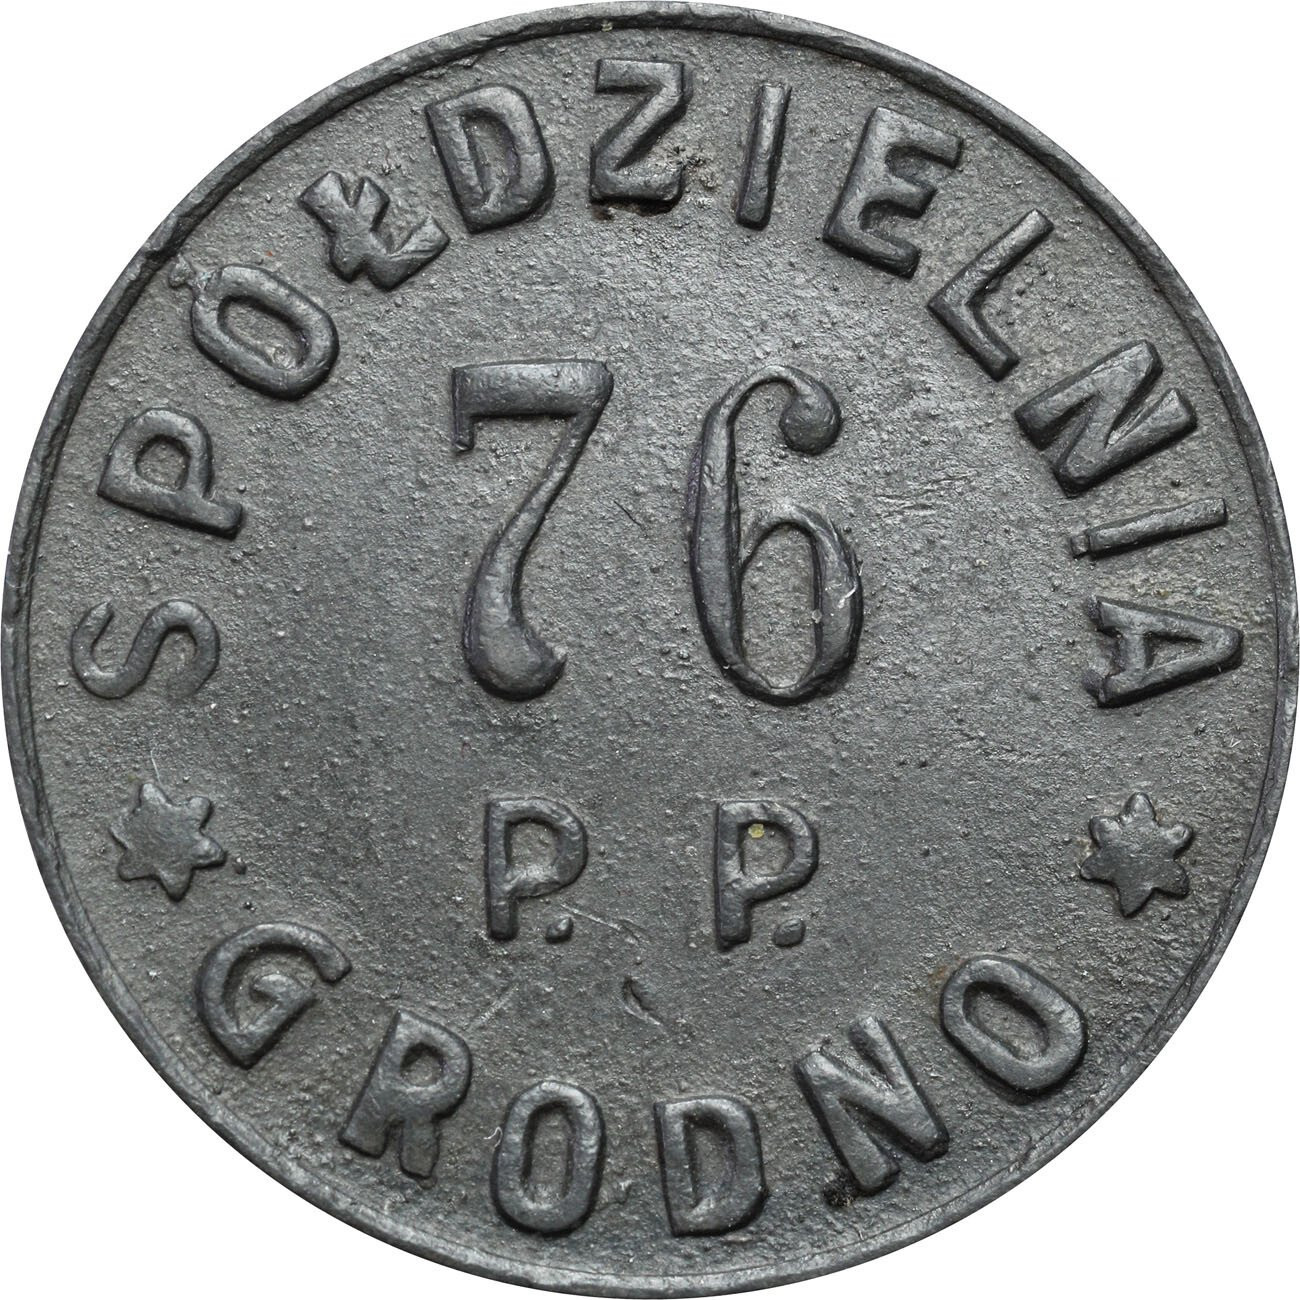 Grodno - 20 groszy, Spółdzielnia Wojskowa 76 Pułk Piechoty